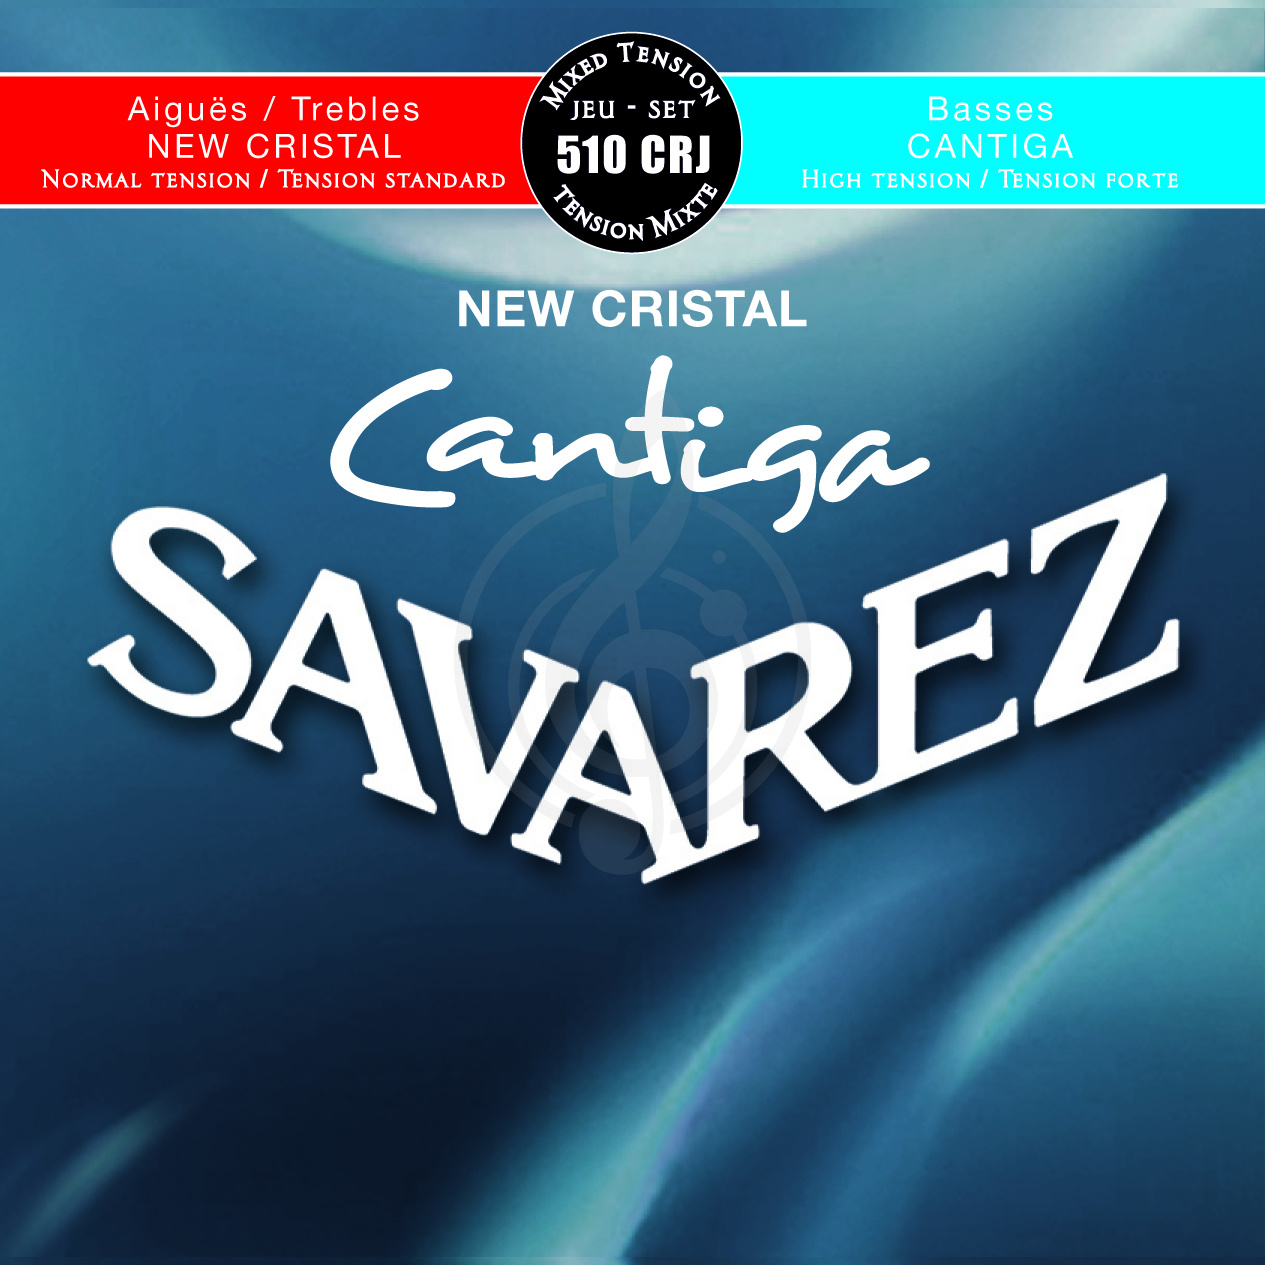 Струны для классической гитары Струны для классических гитар Savarez SAVAREZ 510 CRJ NEW CRISTAL CANTIGA Струны для классических гитар (29-33-41-30-36-44) 510 CRJ - фото 1